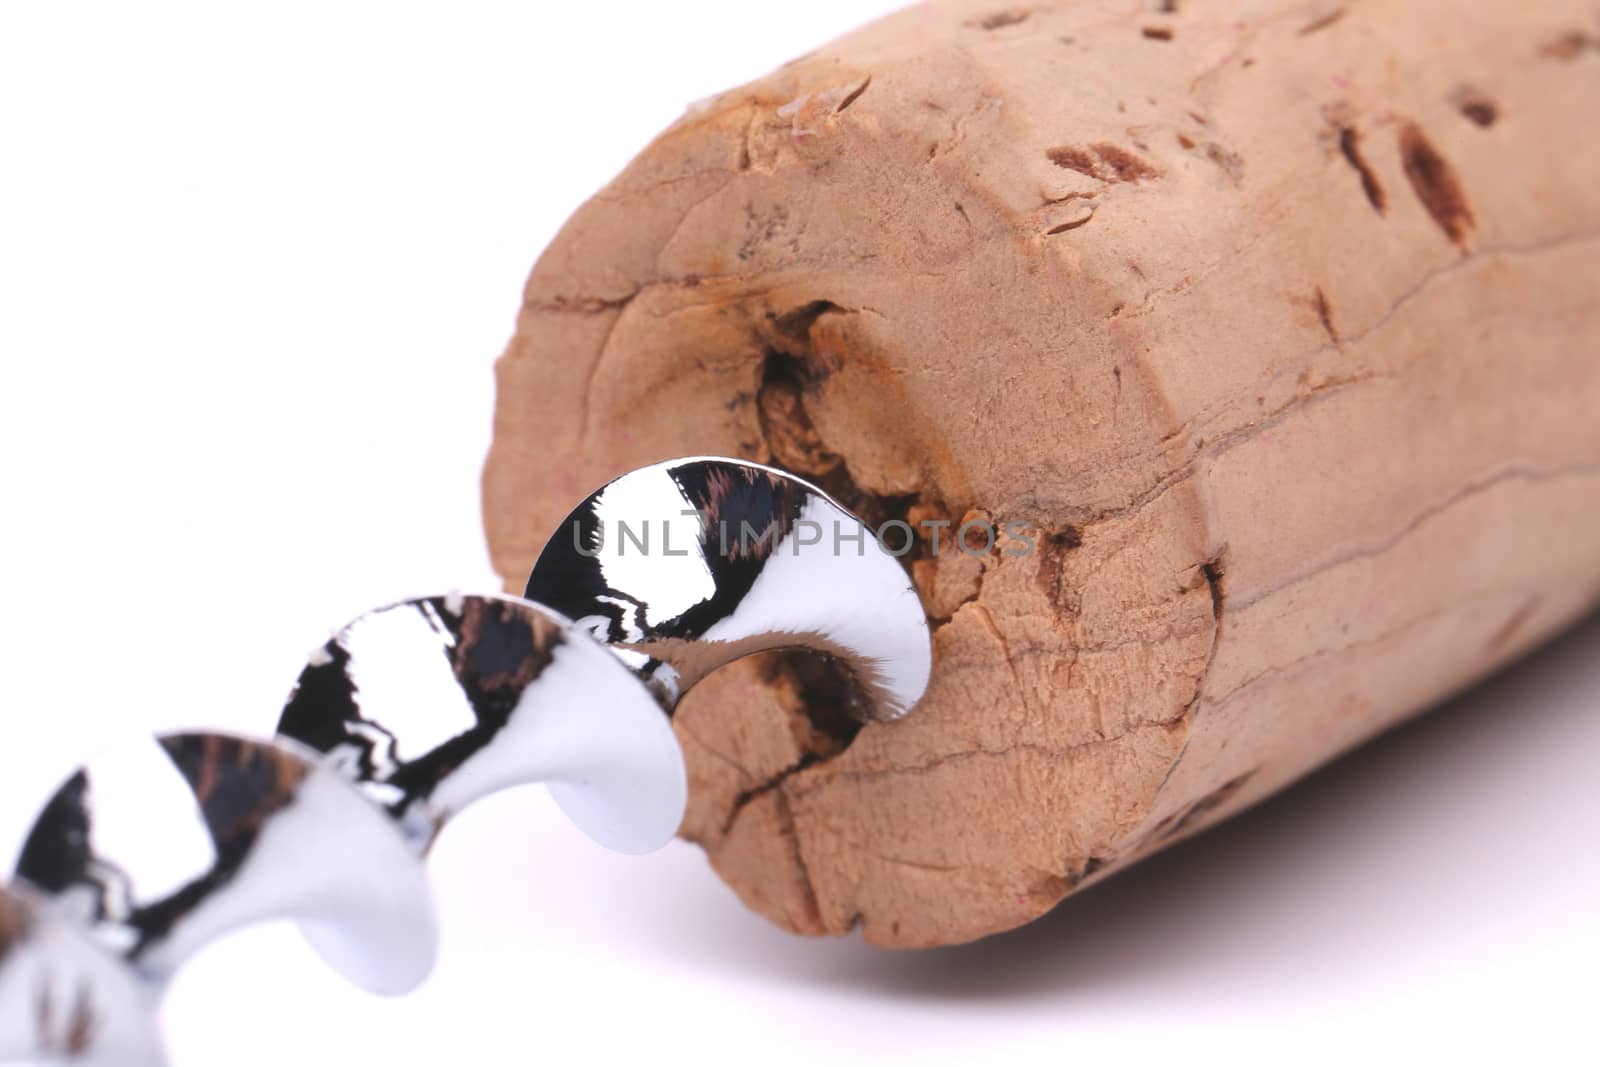 A cork and corkscrew by indigolotos